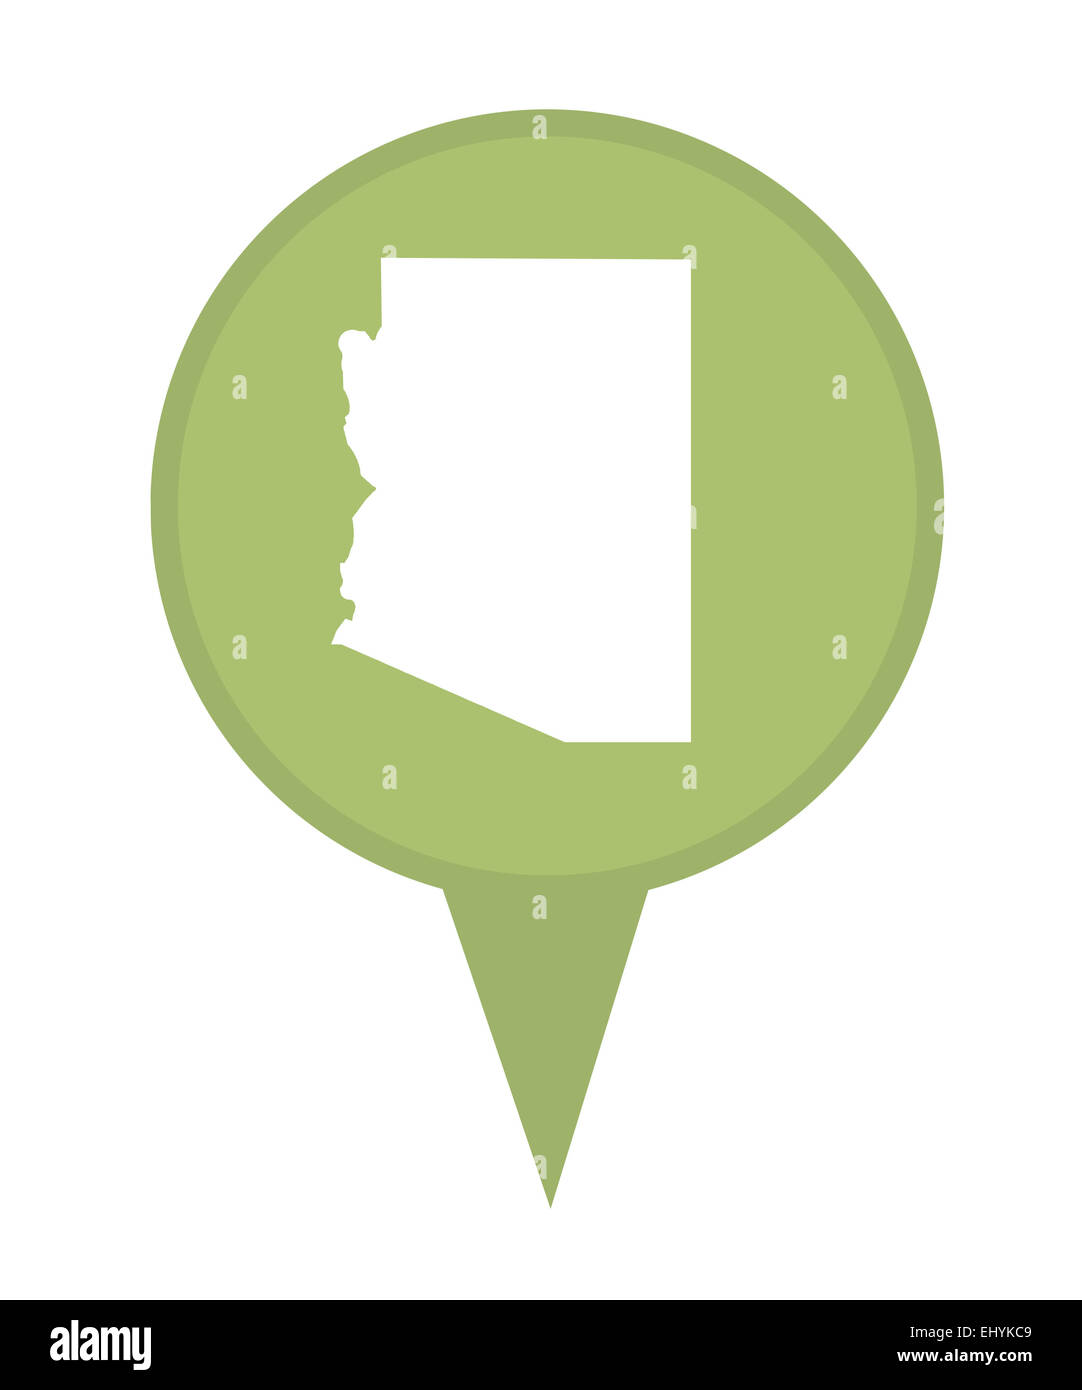 Amerikanischen Bundesstaat Arizona Stecknadel isoliert auf einem weißen Hintergrund. Stockfoto